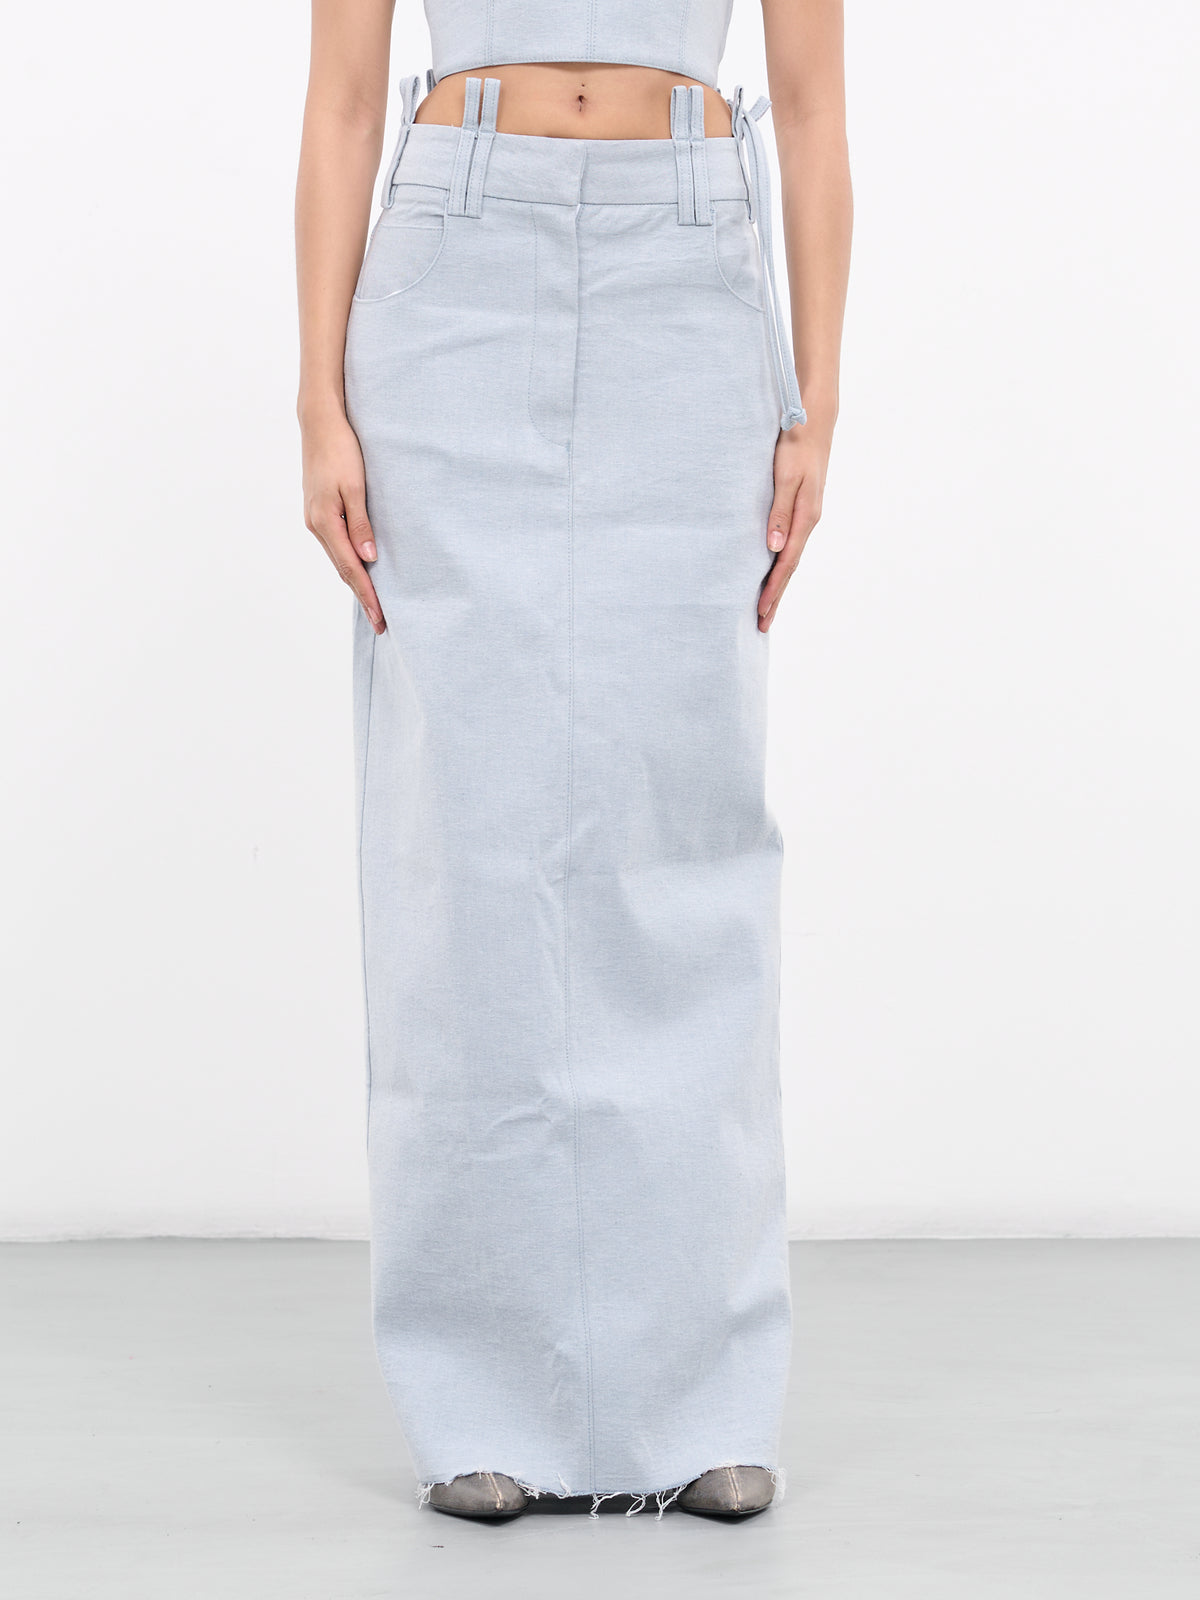 Denim Skirt (23SK02LB-LIGHT-BLUE)